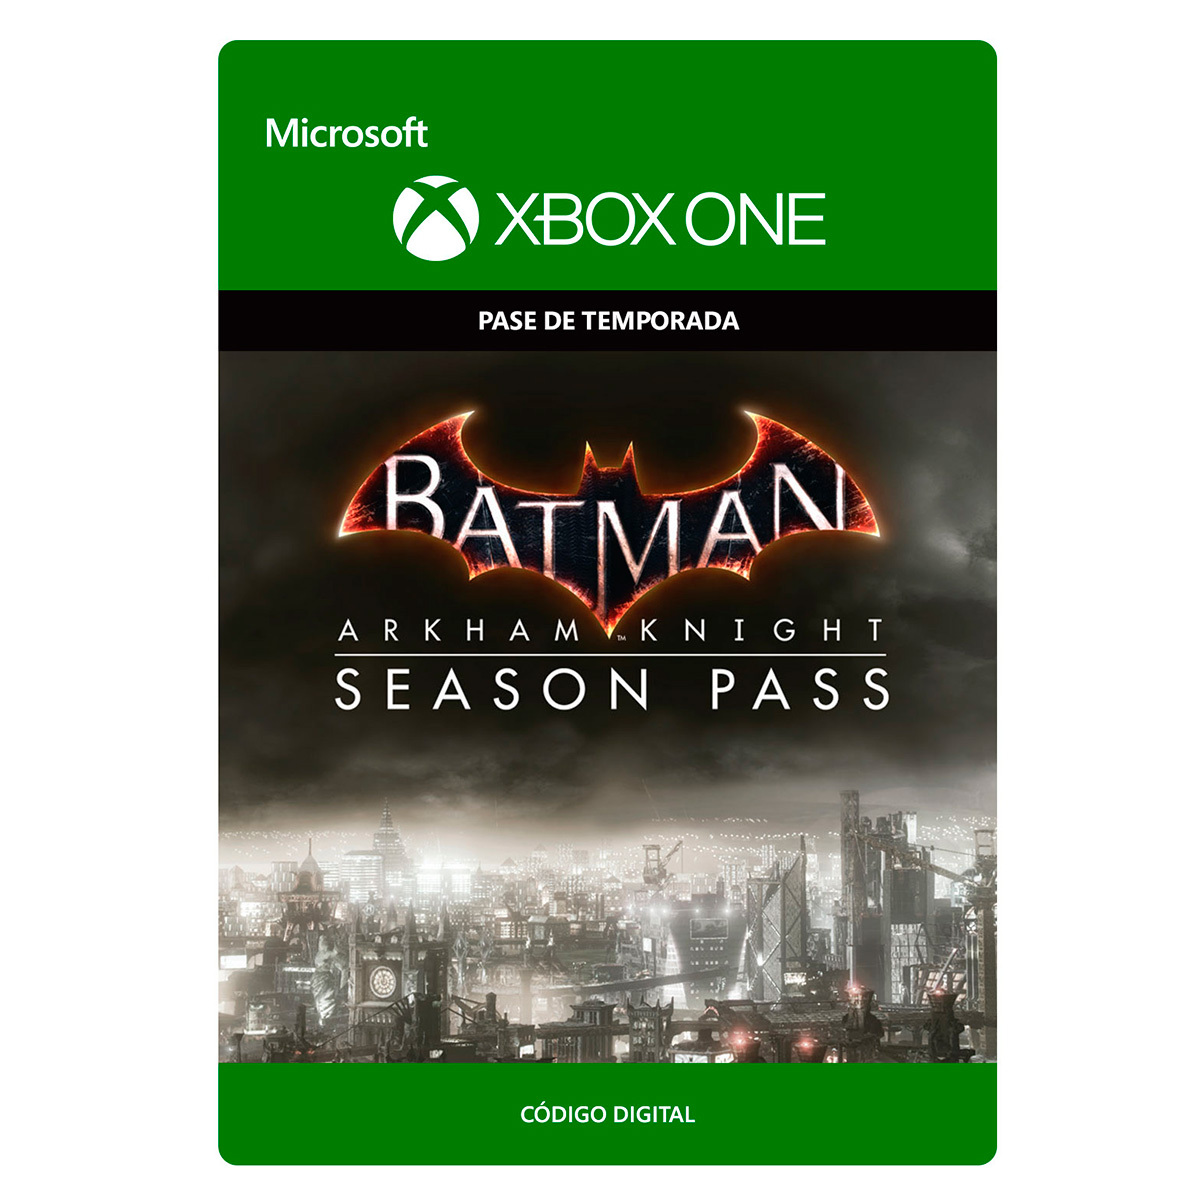 Batman Arkham Knight Season Pass Pase de temporada digital Xbox One  Descargable | RadioShack México